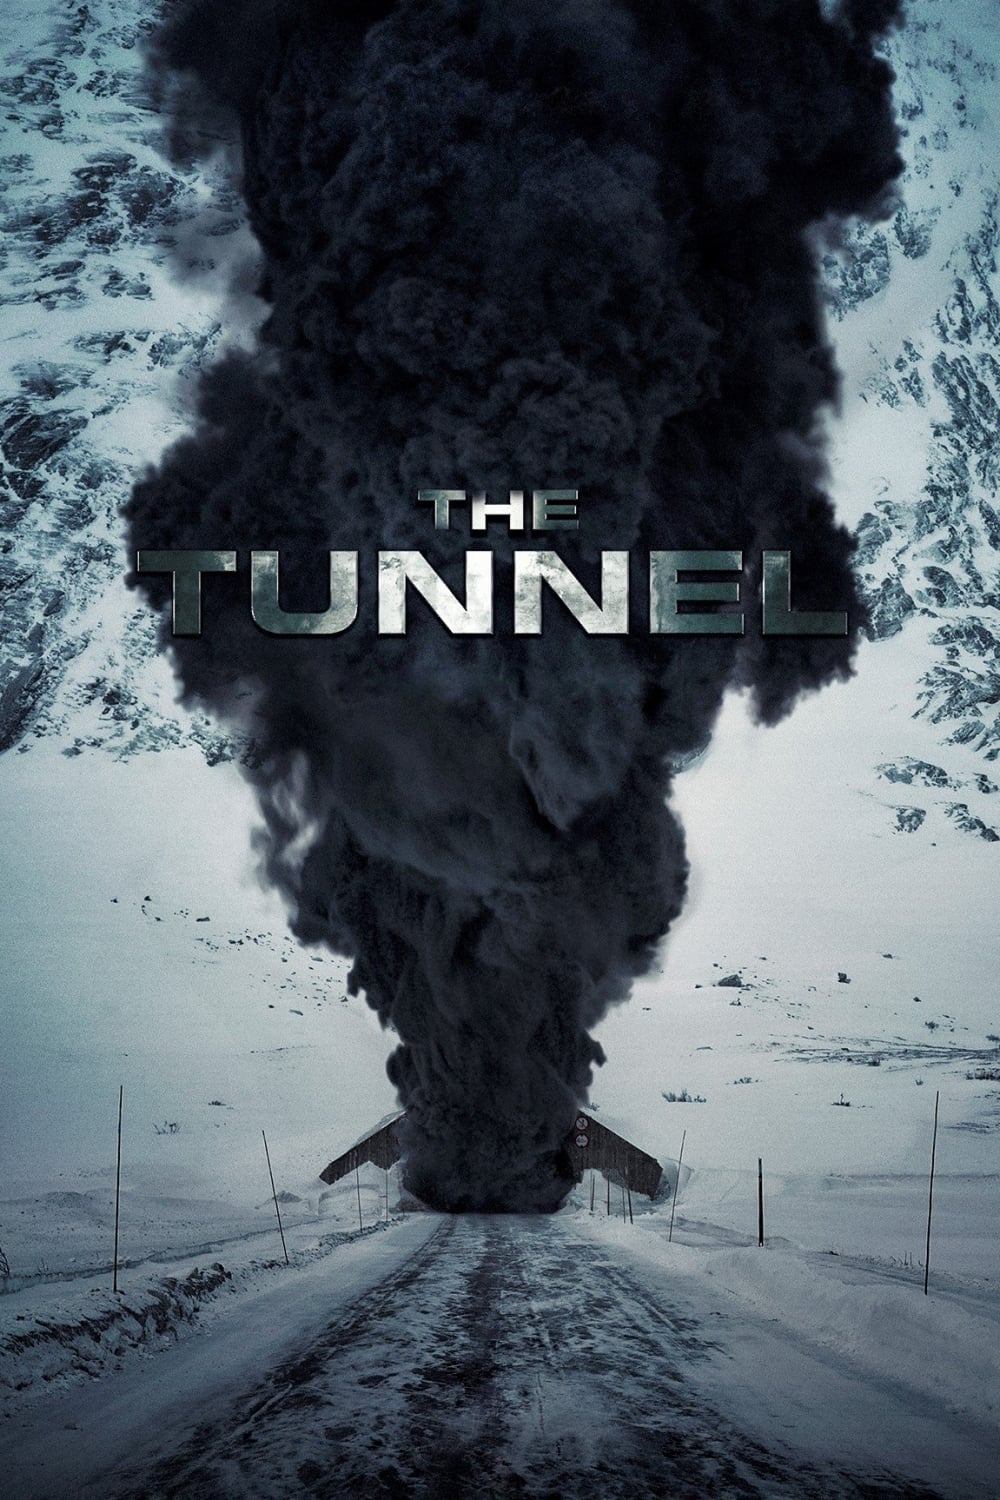 El túnel (2019)